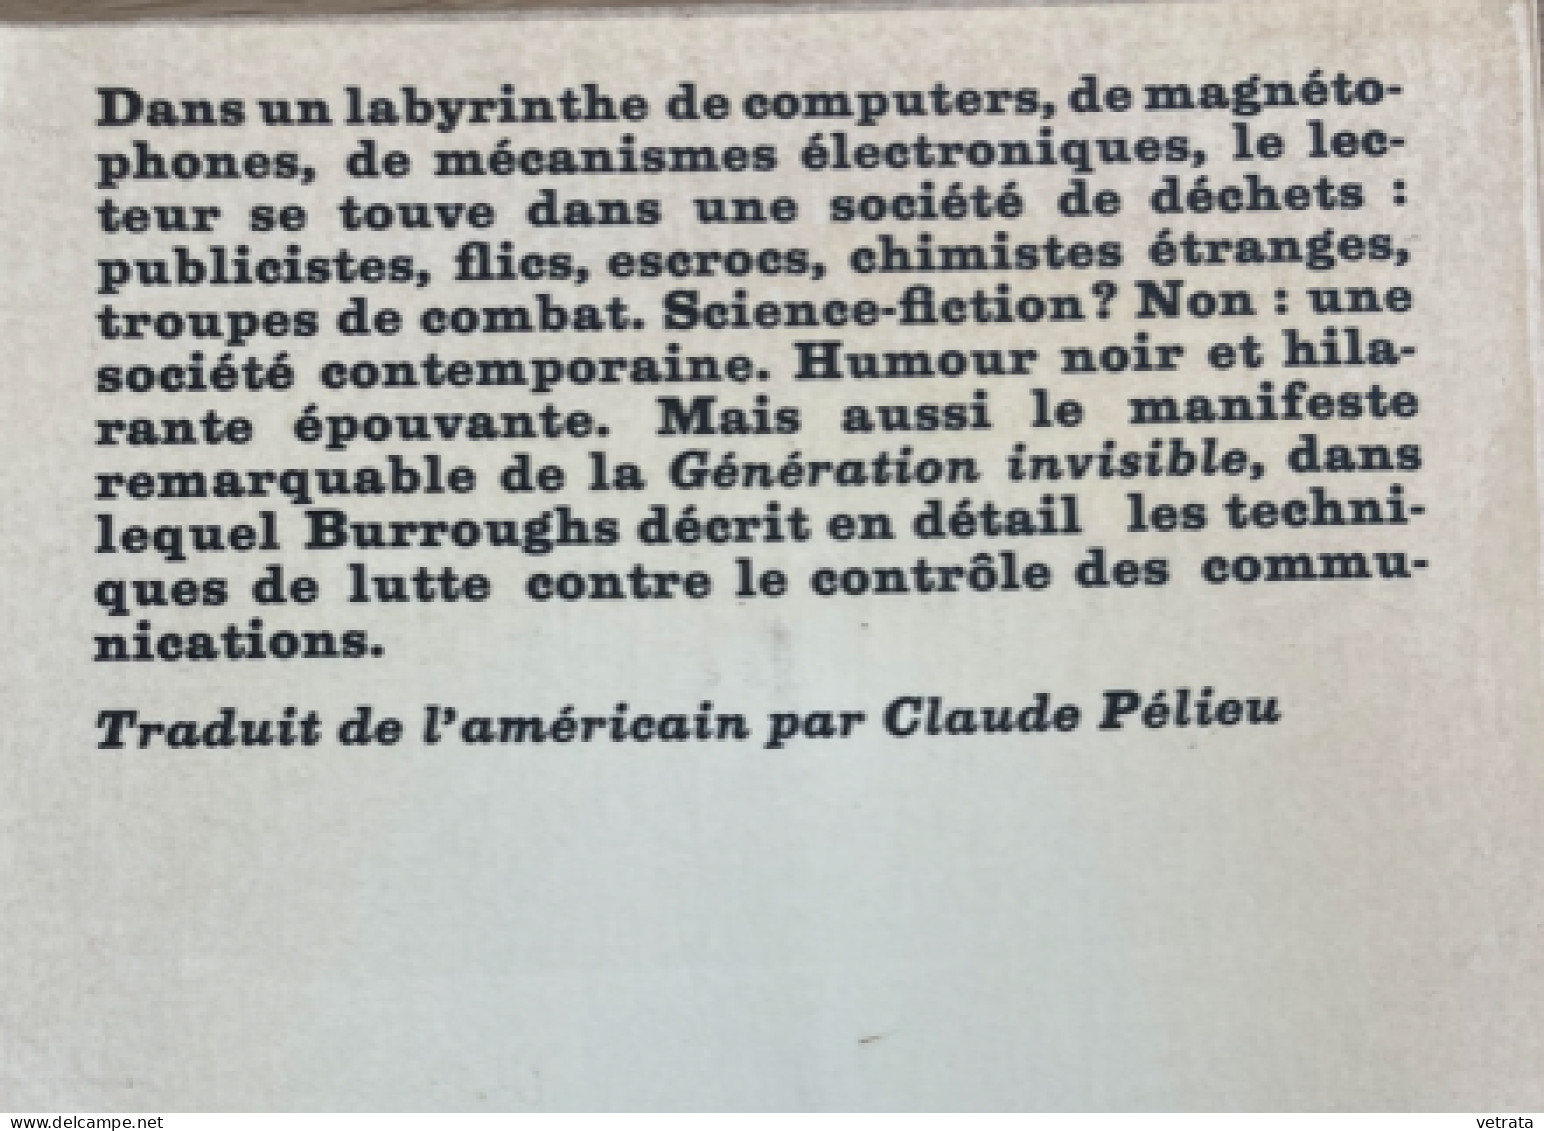 2 Livres De William S. Burroughs = Le Métro Blanc (Seuil - 1976) / Le Ticket Qui Explosa (10/18 - 1972) - Lots De Plusieurs Livres